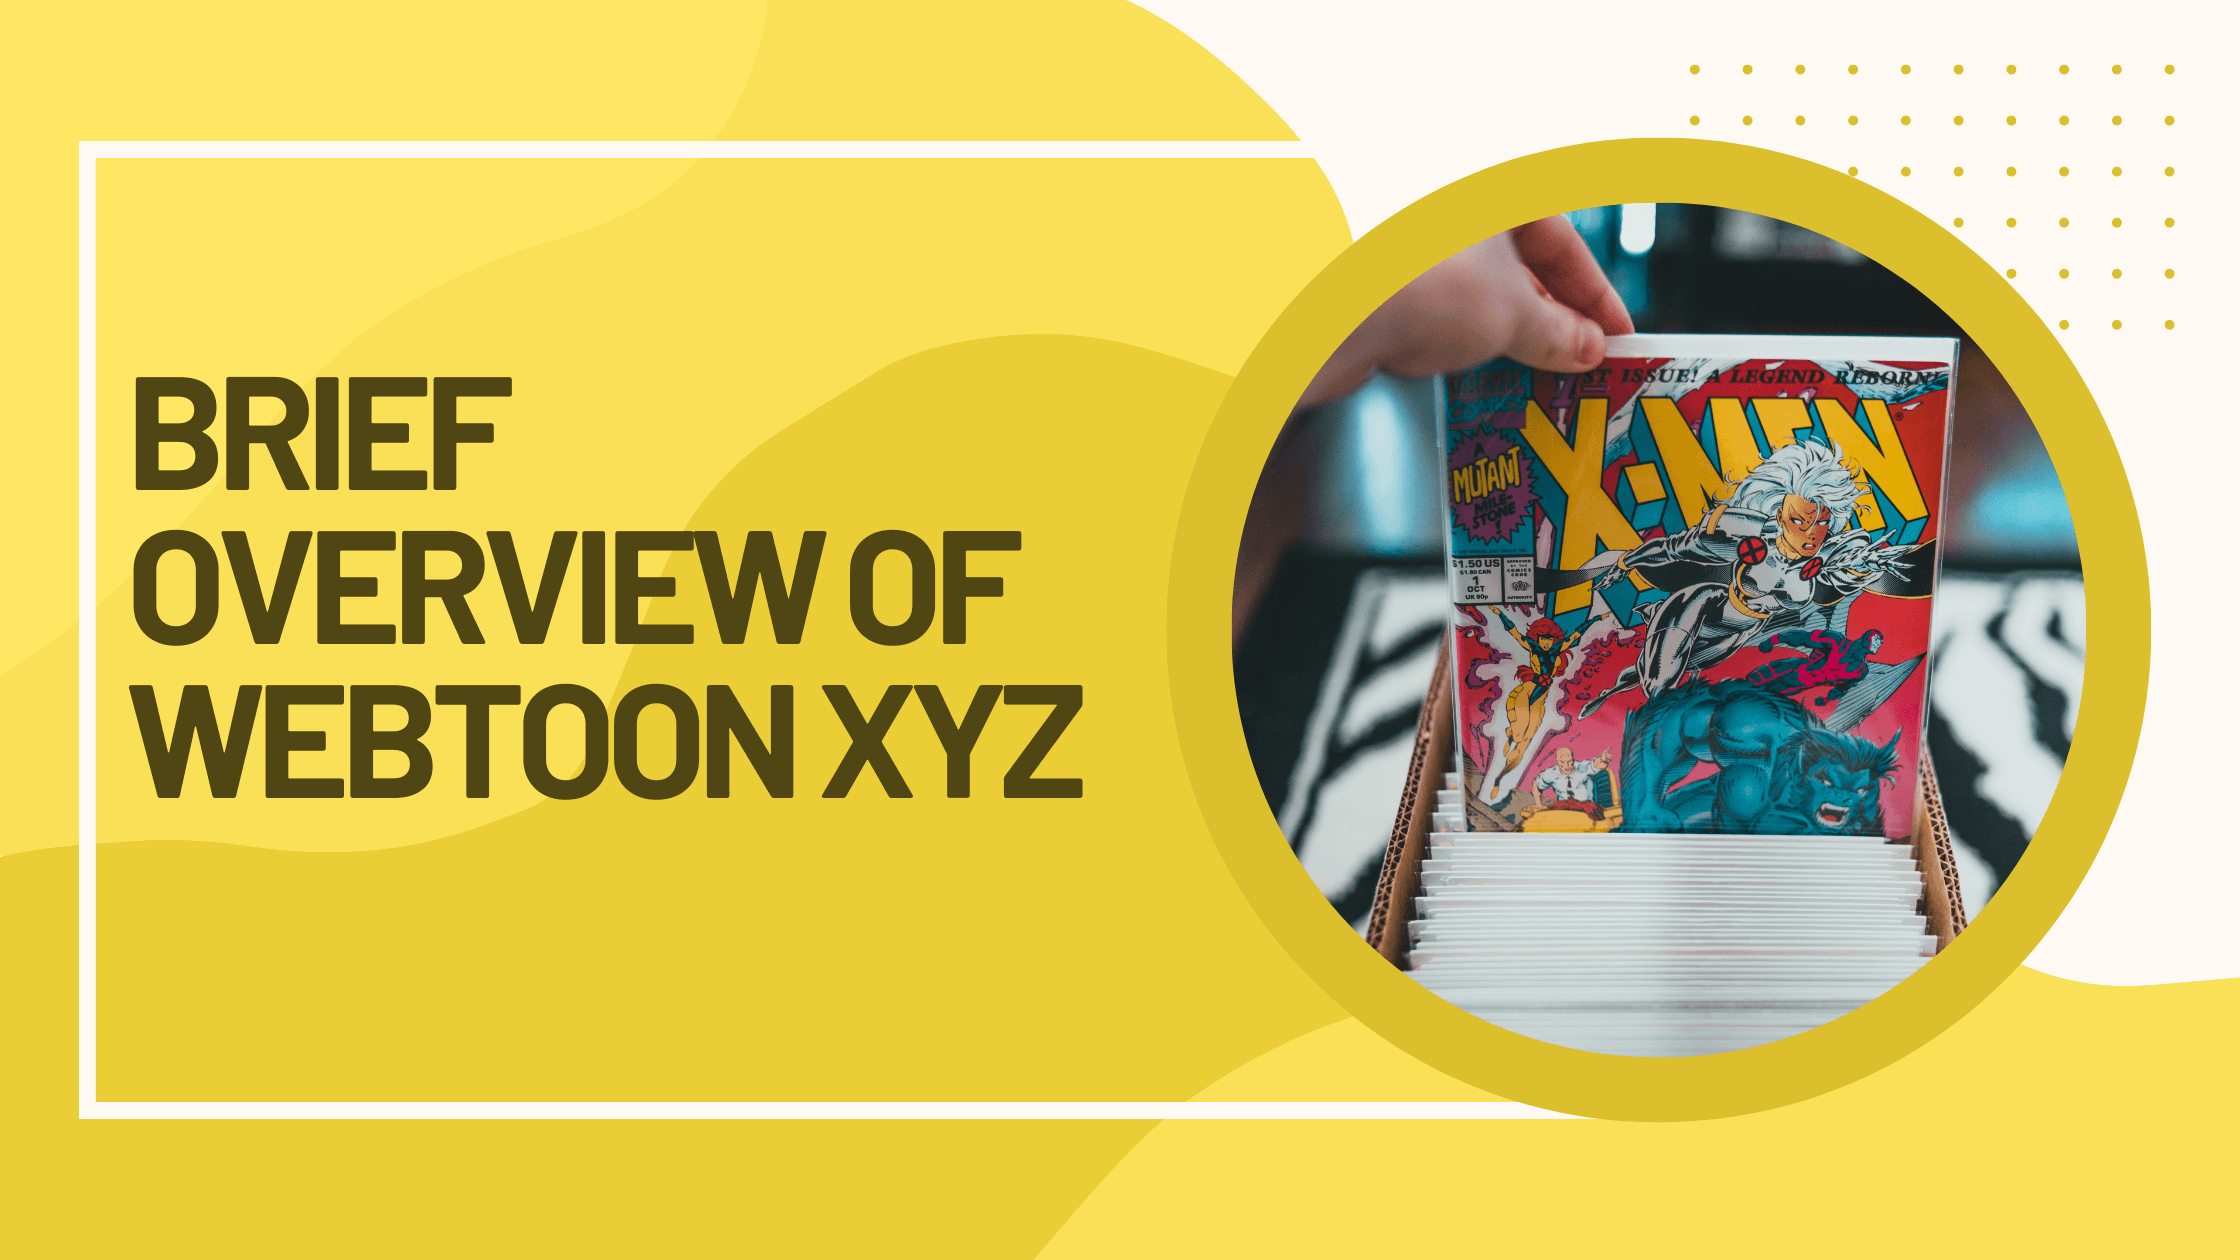 Brief Overview of Webtoon XYZ